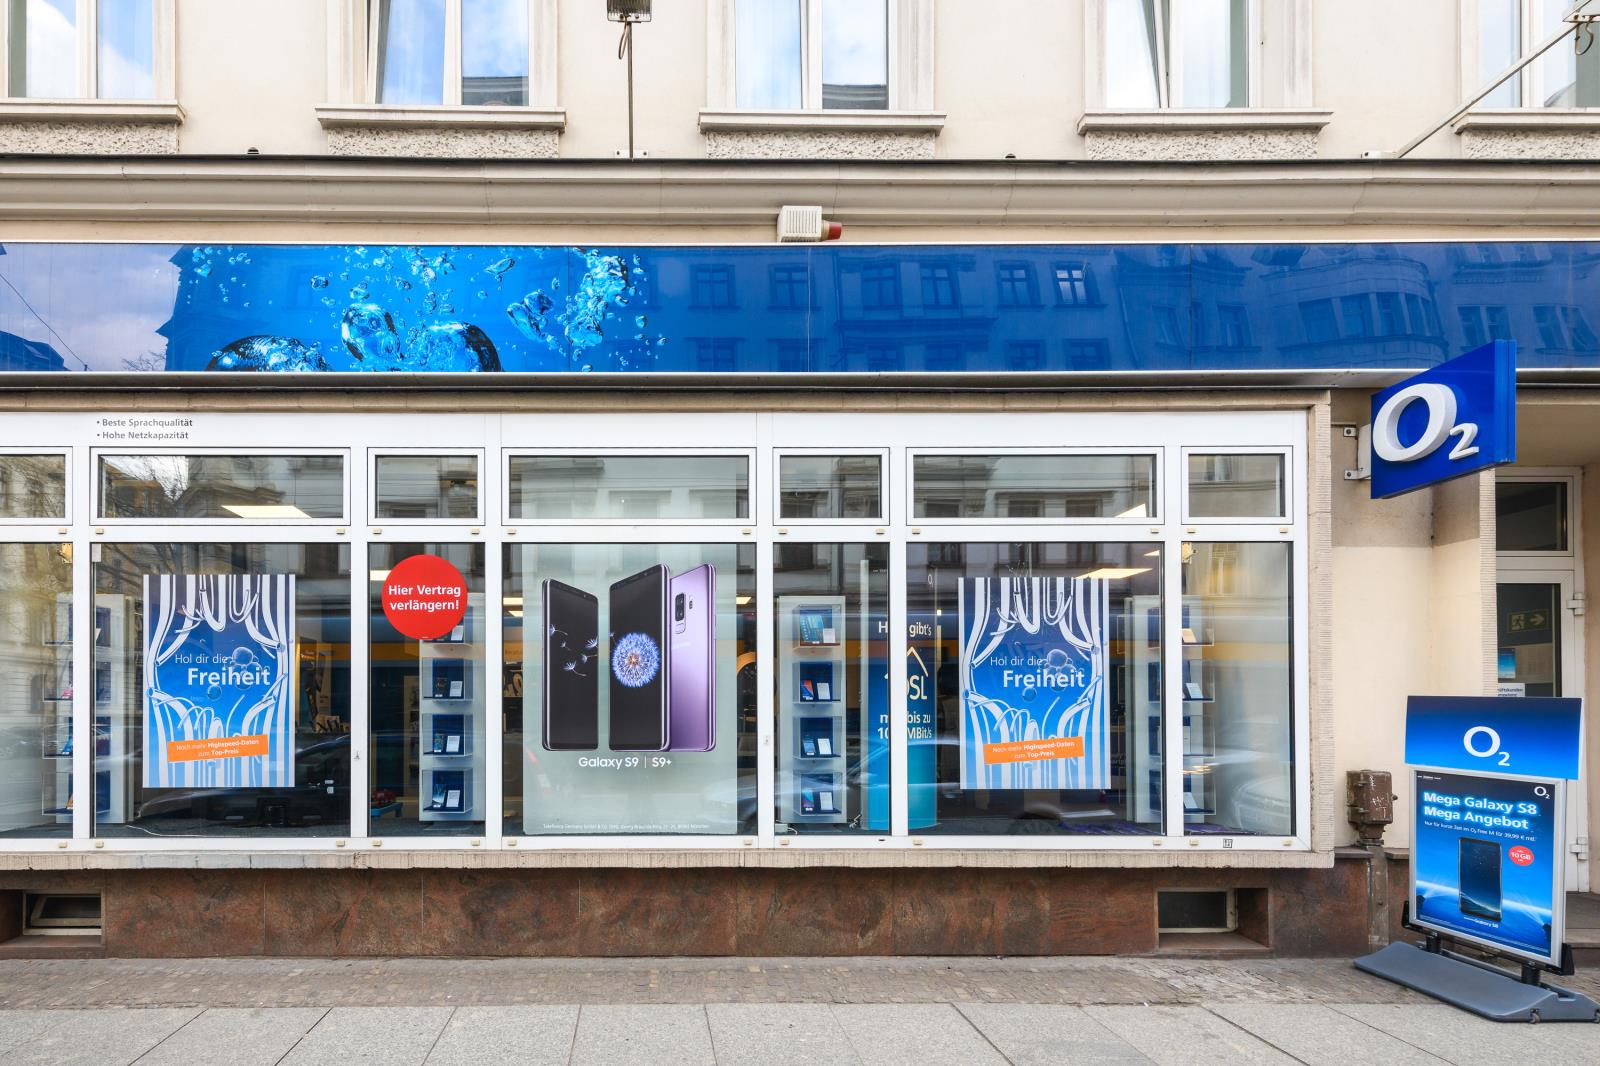 o2 Shop, Jahnallee 15 in Leipzig